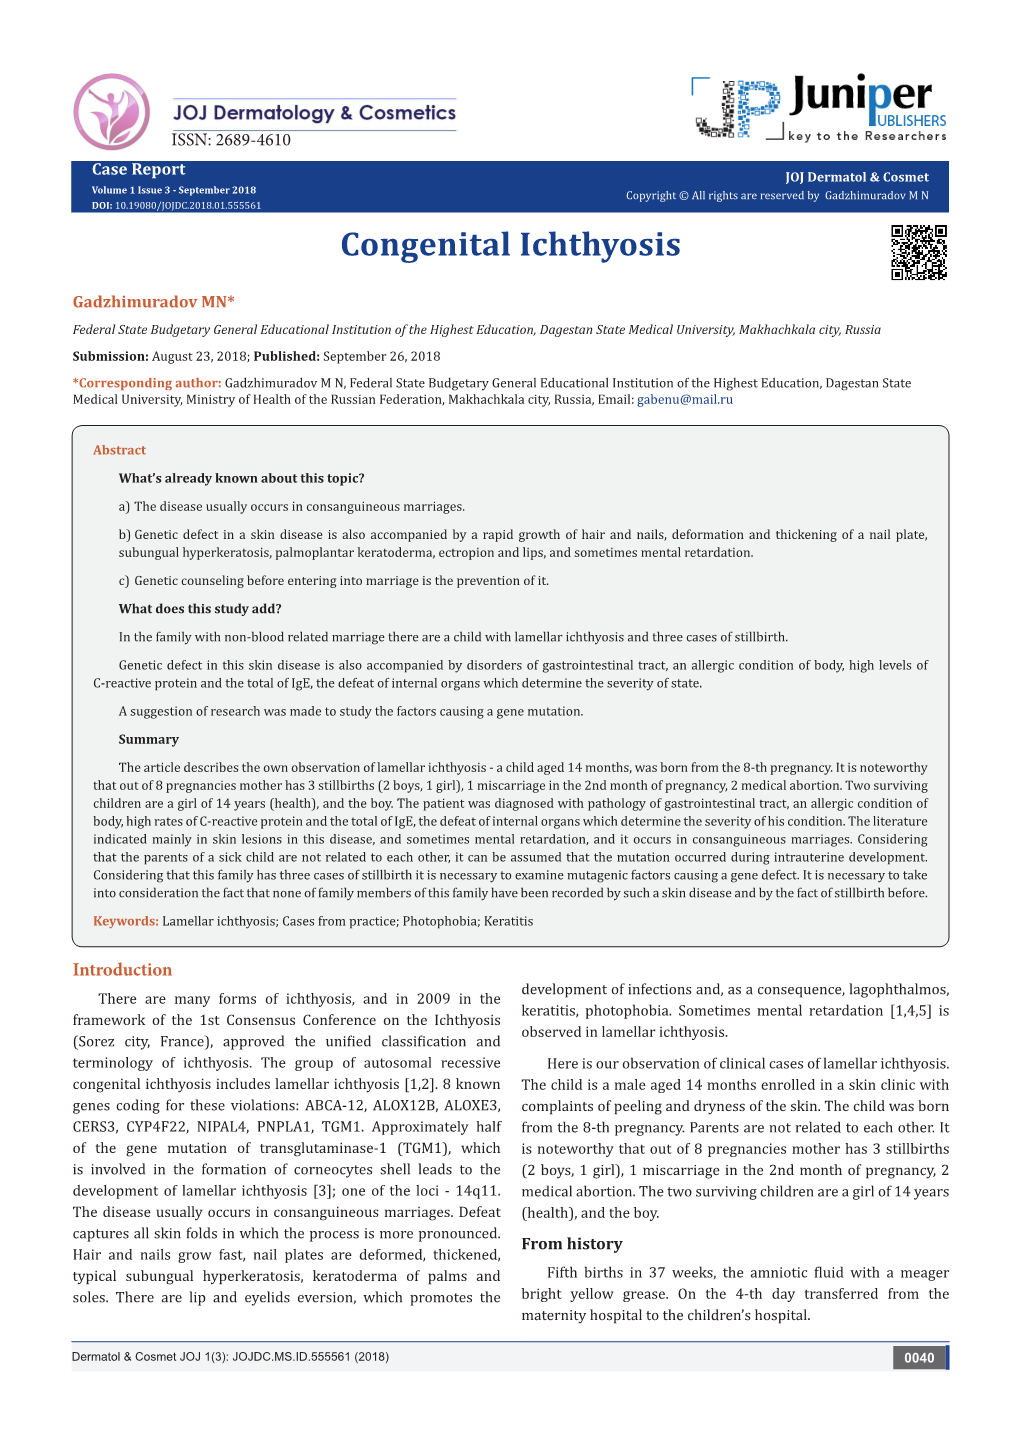 Congenital Ichthyosis